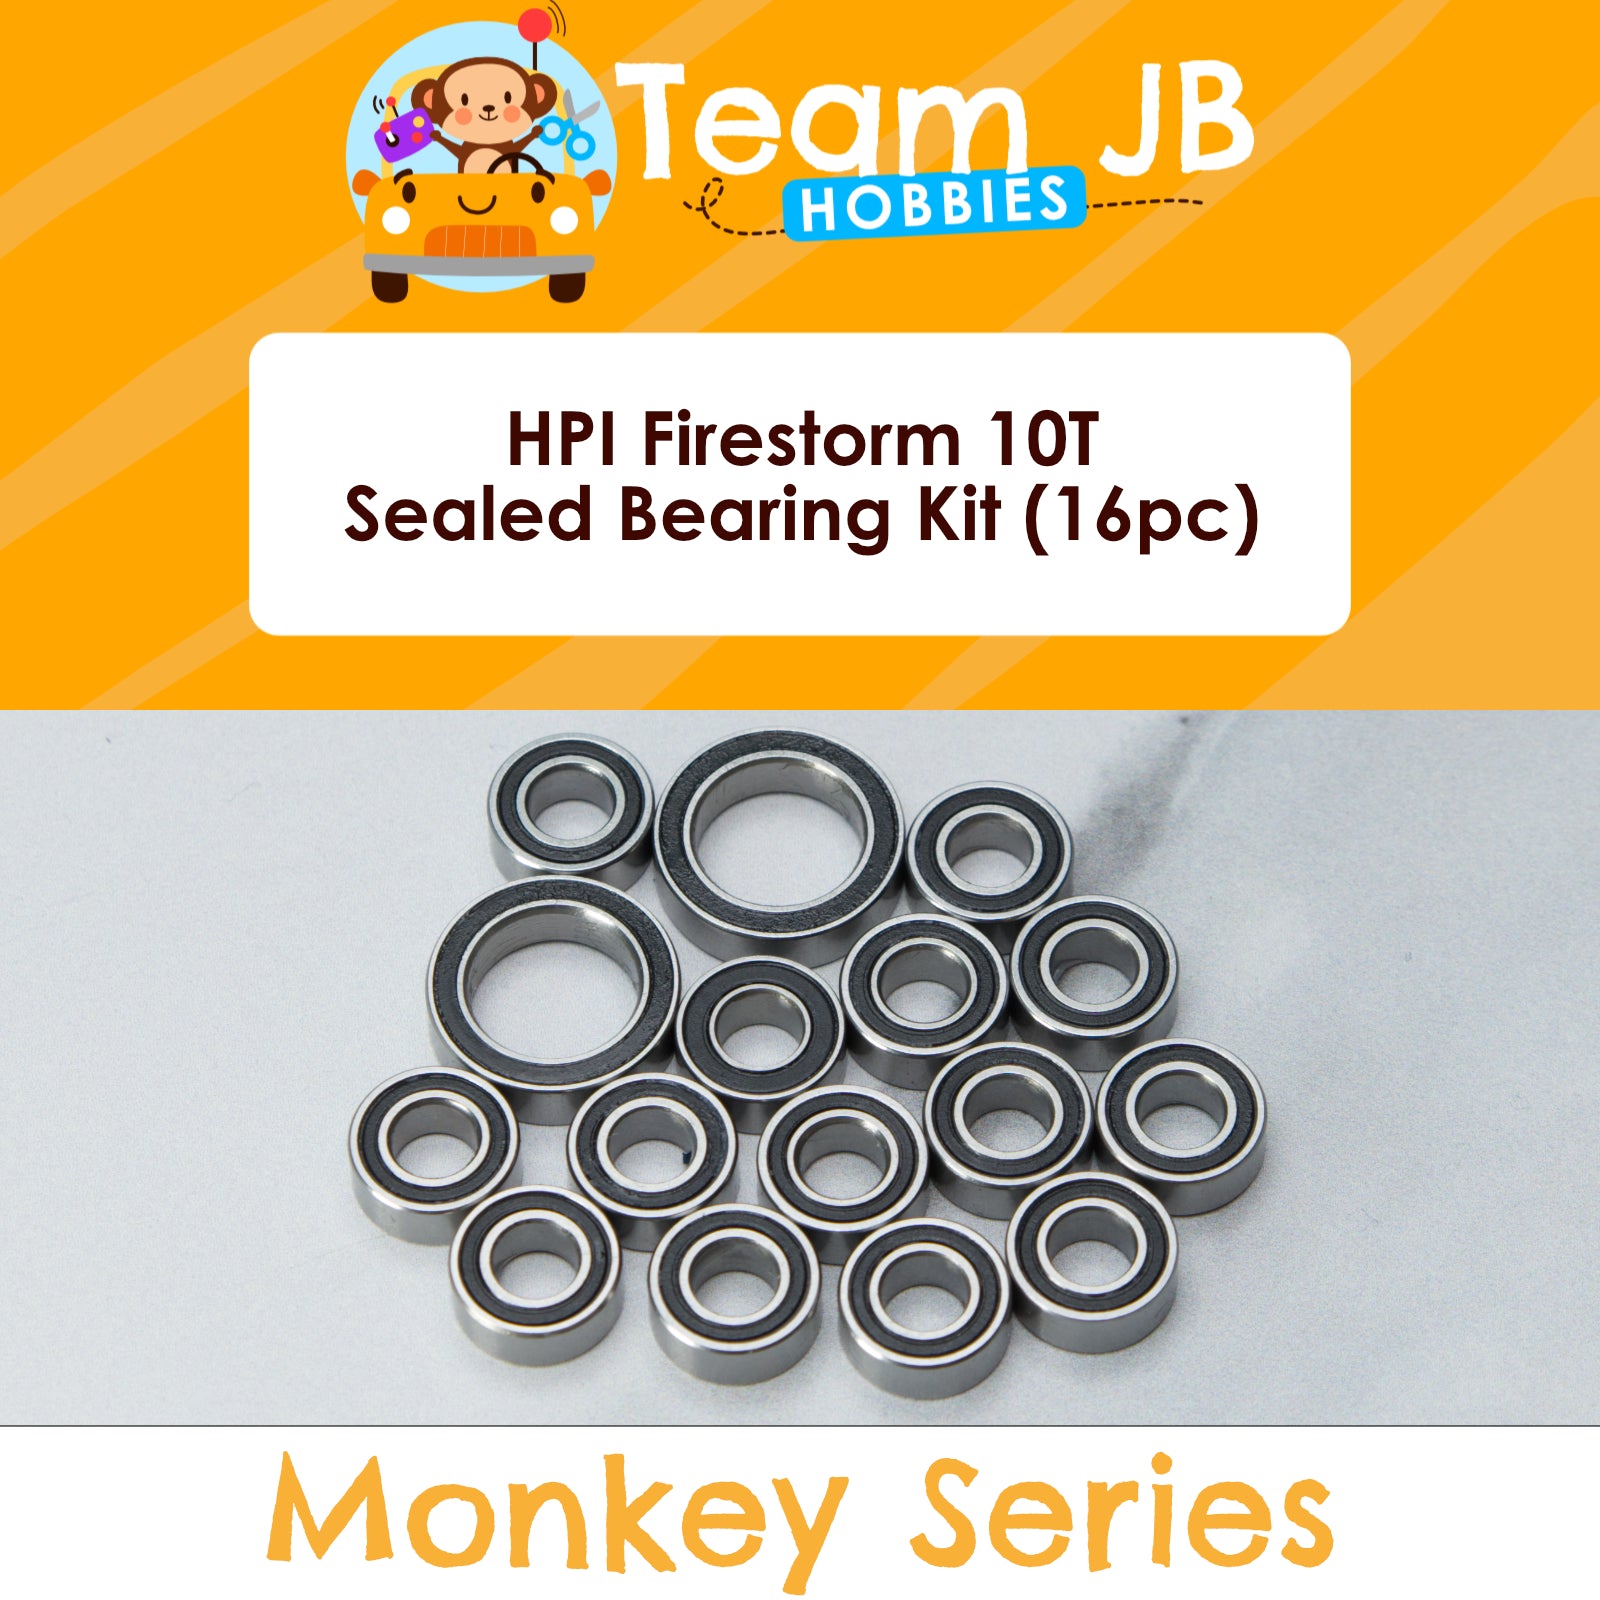 HPI Firestorm 10T - Sealed Bearing Kit